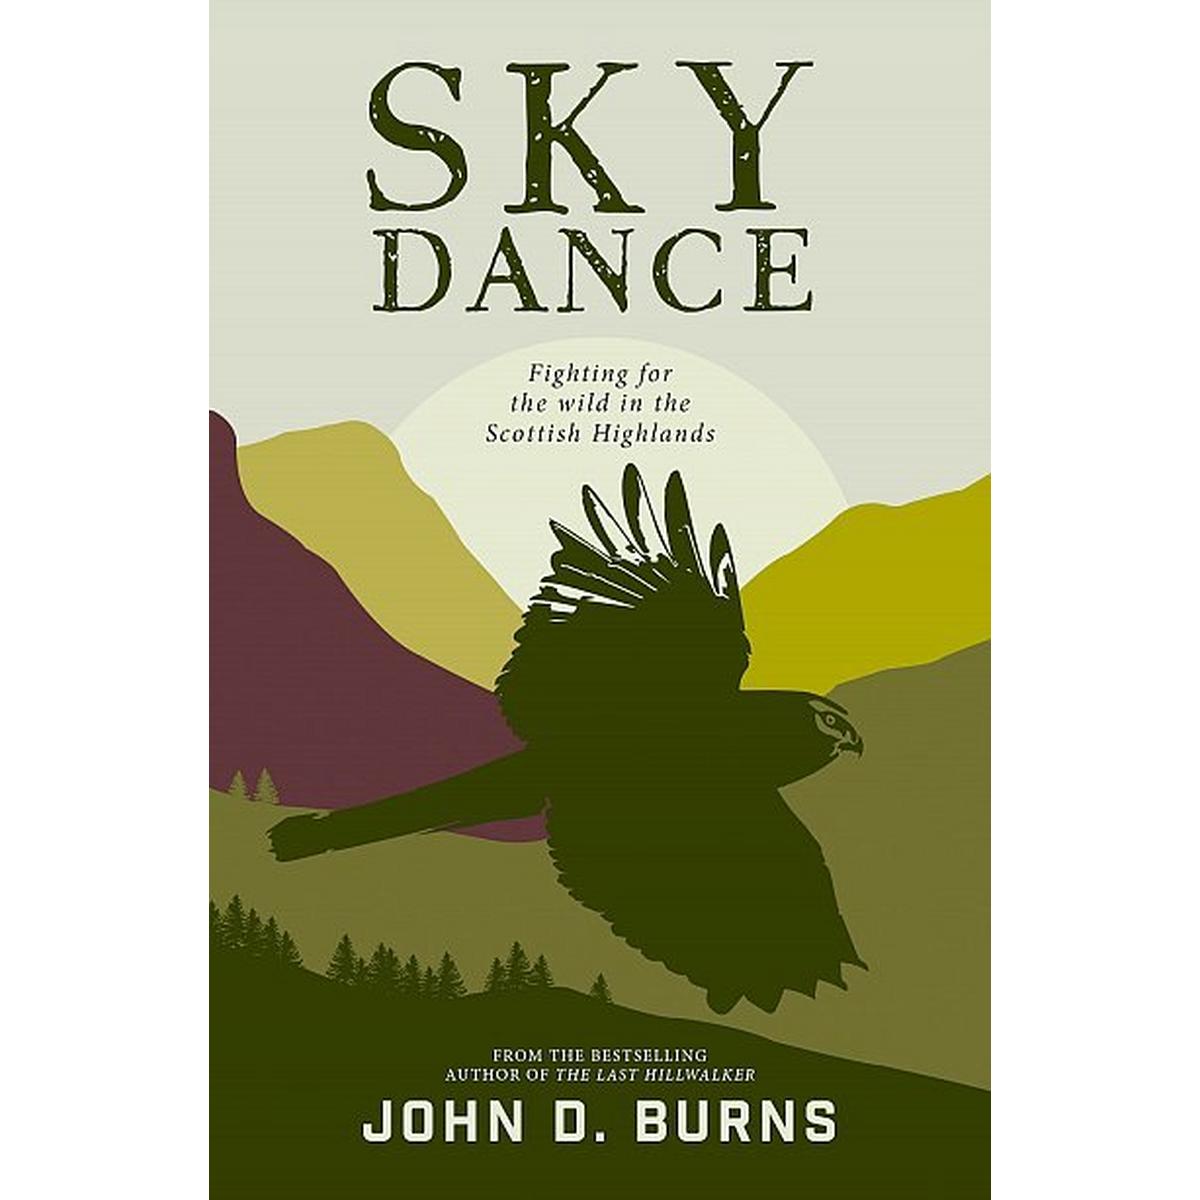 Cordee Sky Dance by John D.Burns